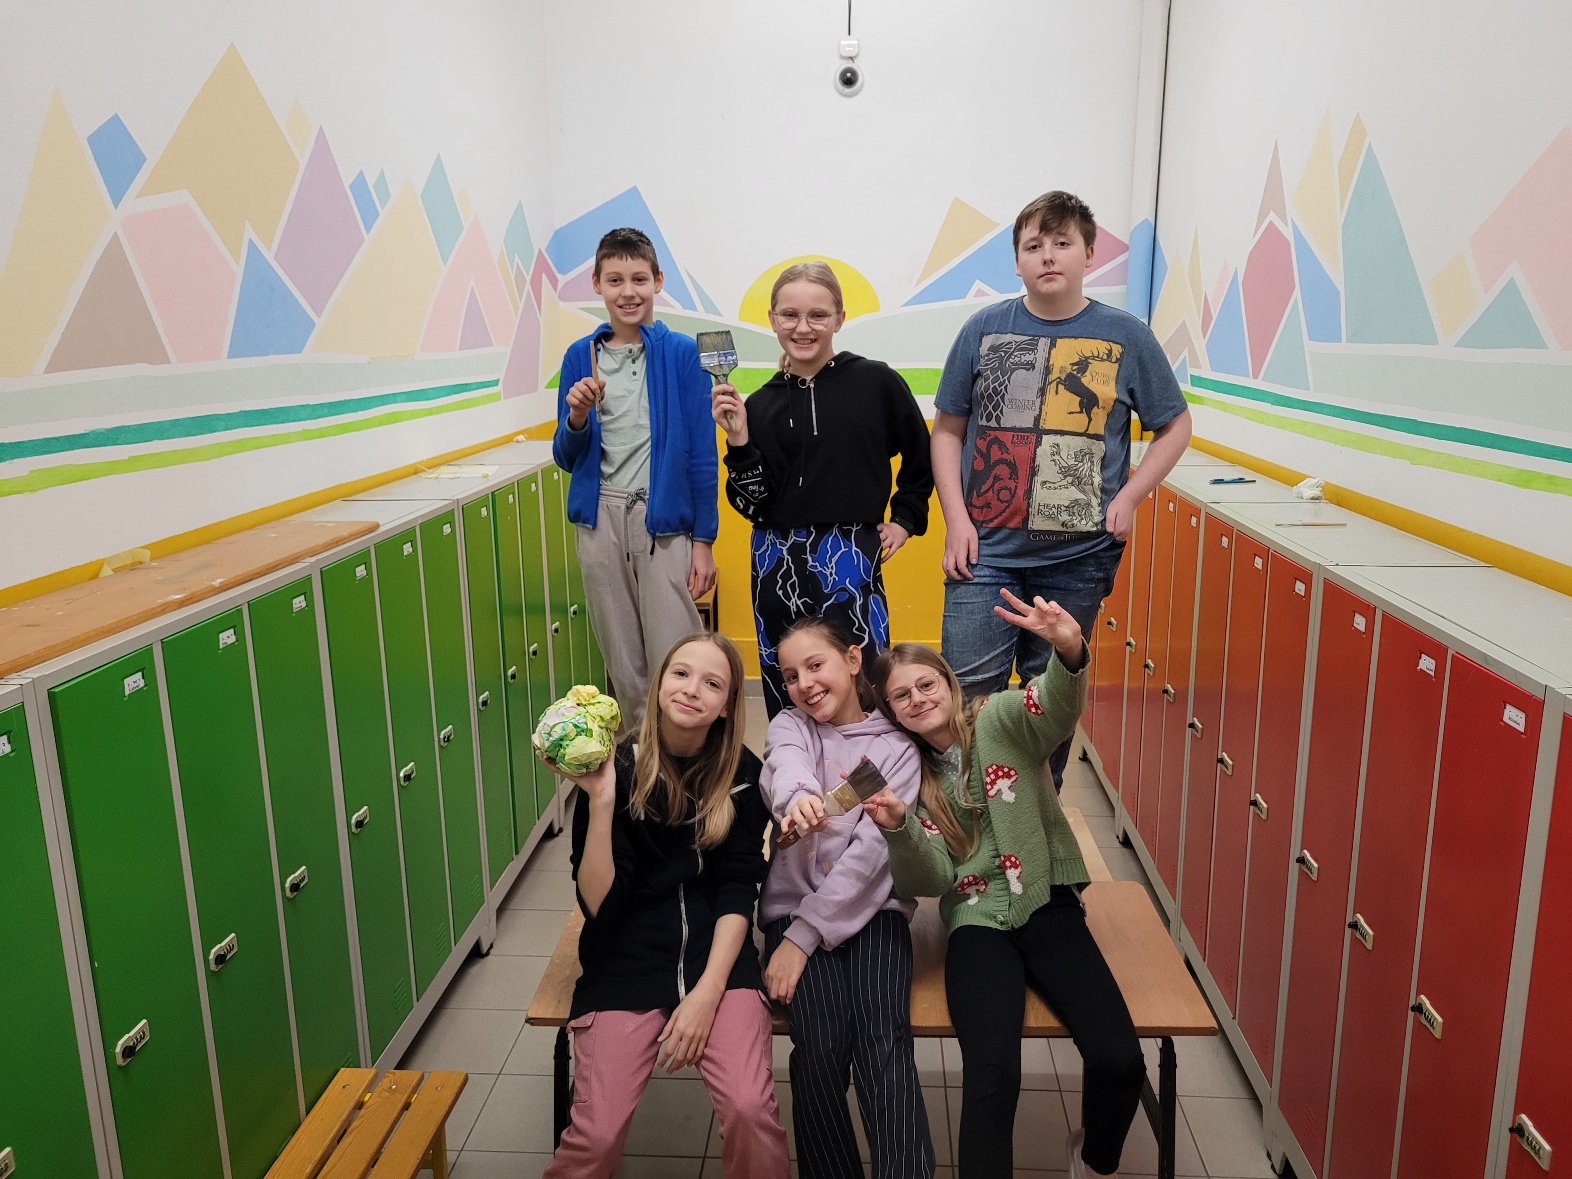 Na zdjęciu grupa uśmiechniętych dzieci na tle pomalowanej w różnobarwne kształty ścianie.